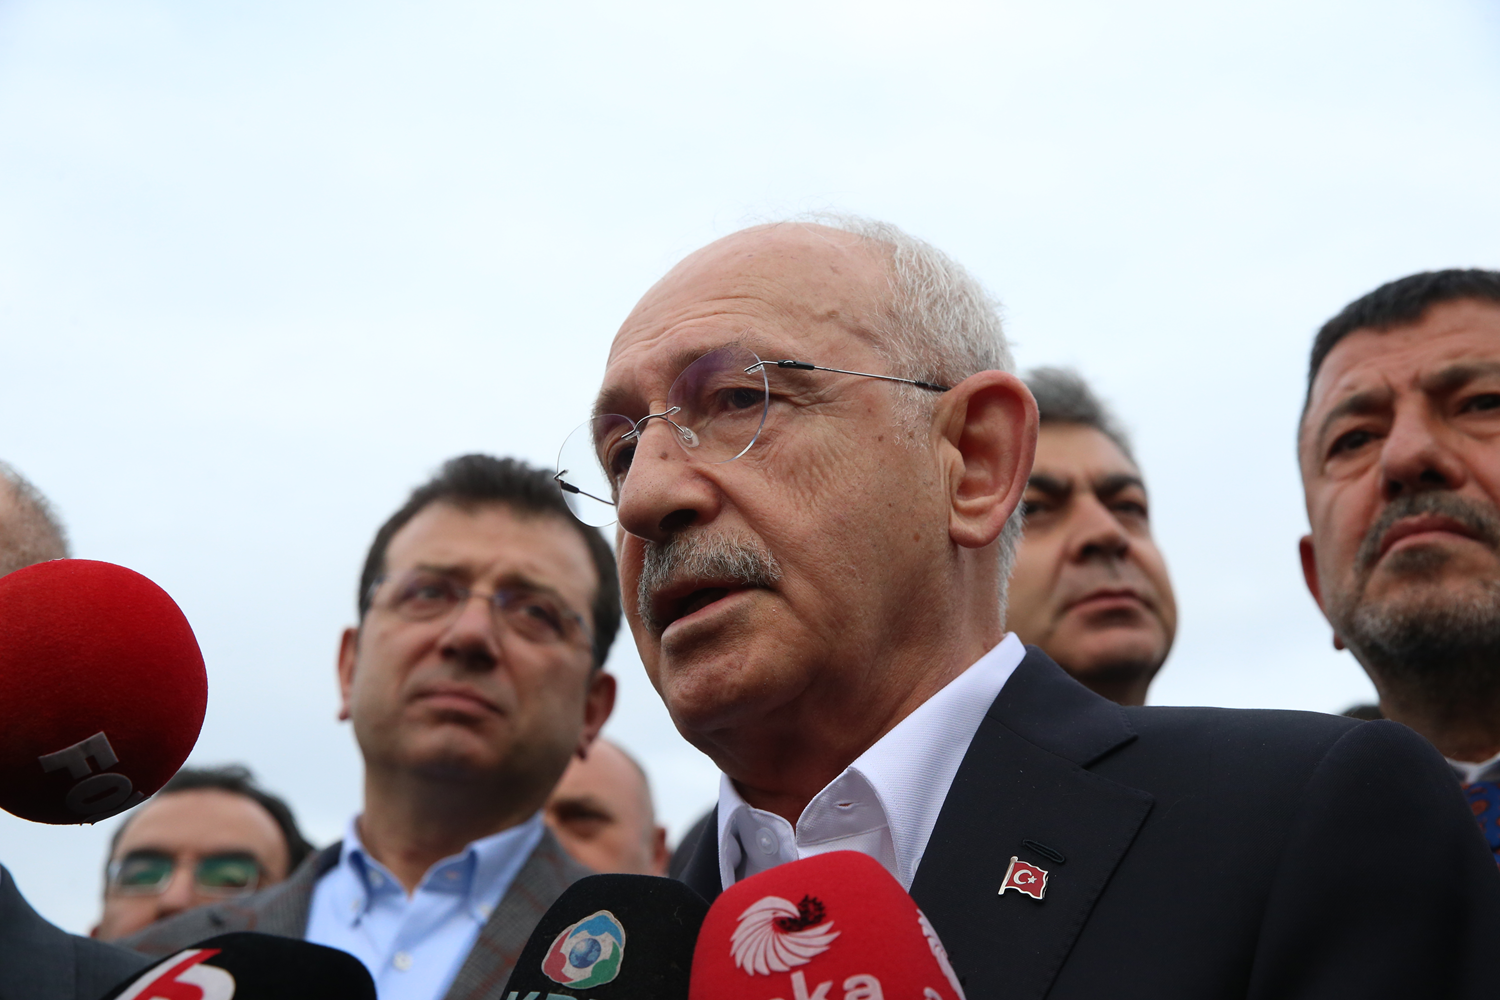 Vatandatan Kldarolu'na zor soru: HDP'ye de bakanlk verecek misiniz?